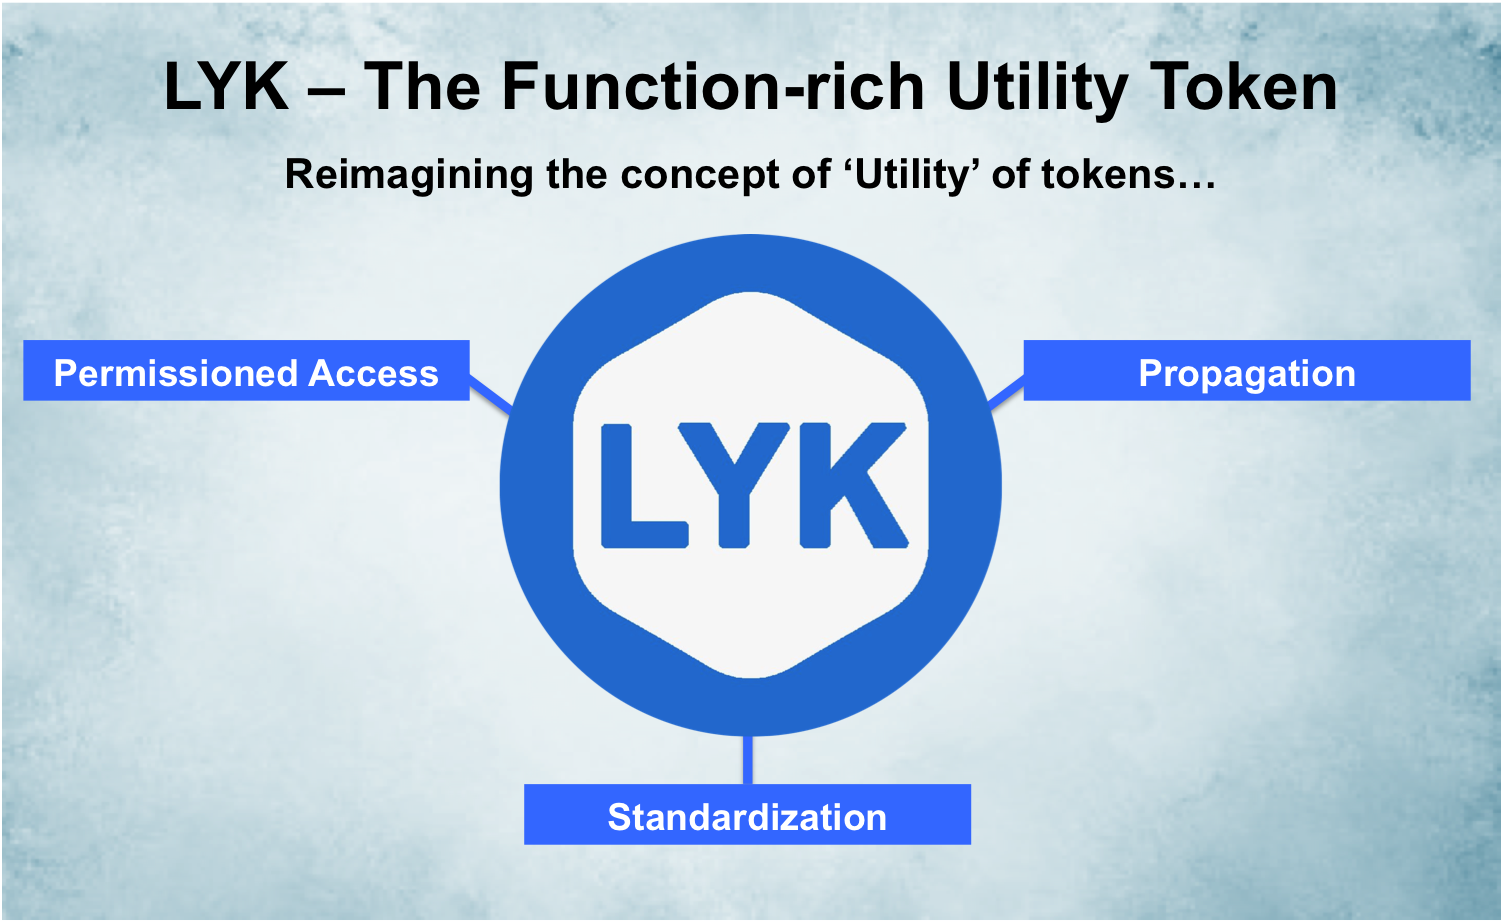 Loyakk utility